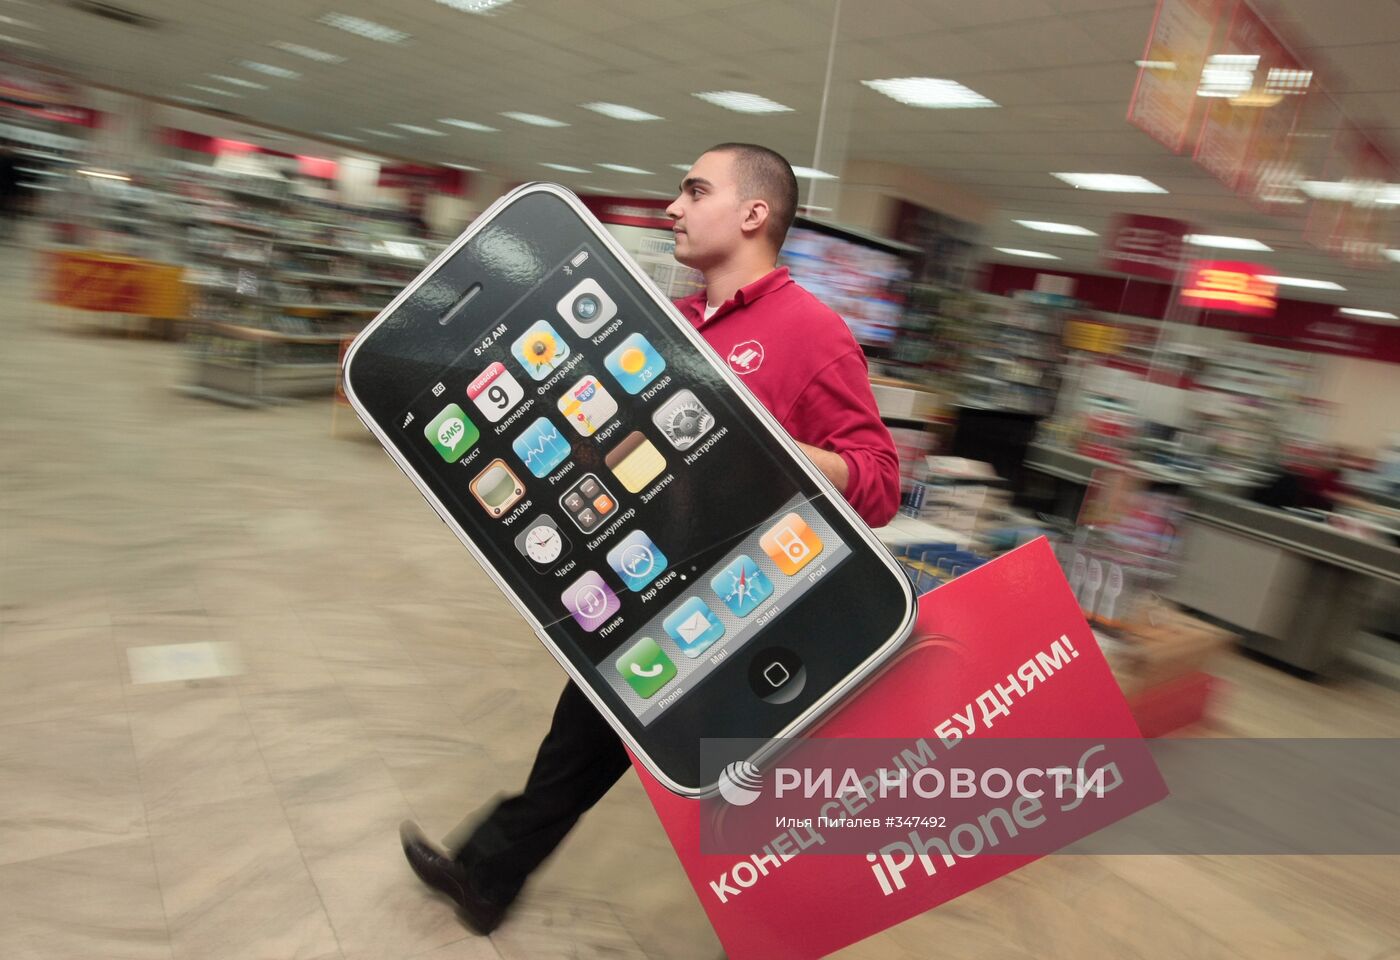 Продажи iPhone 3G в магазинах Москвы начались в полночь